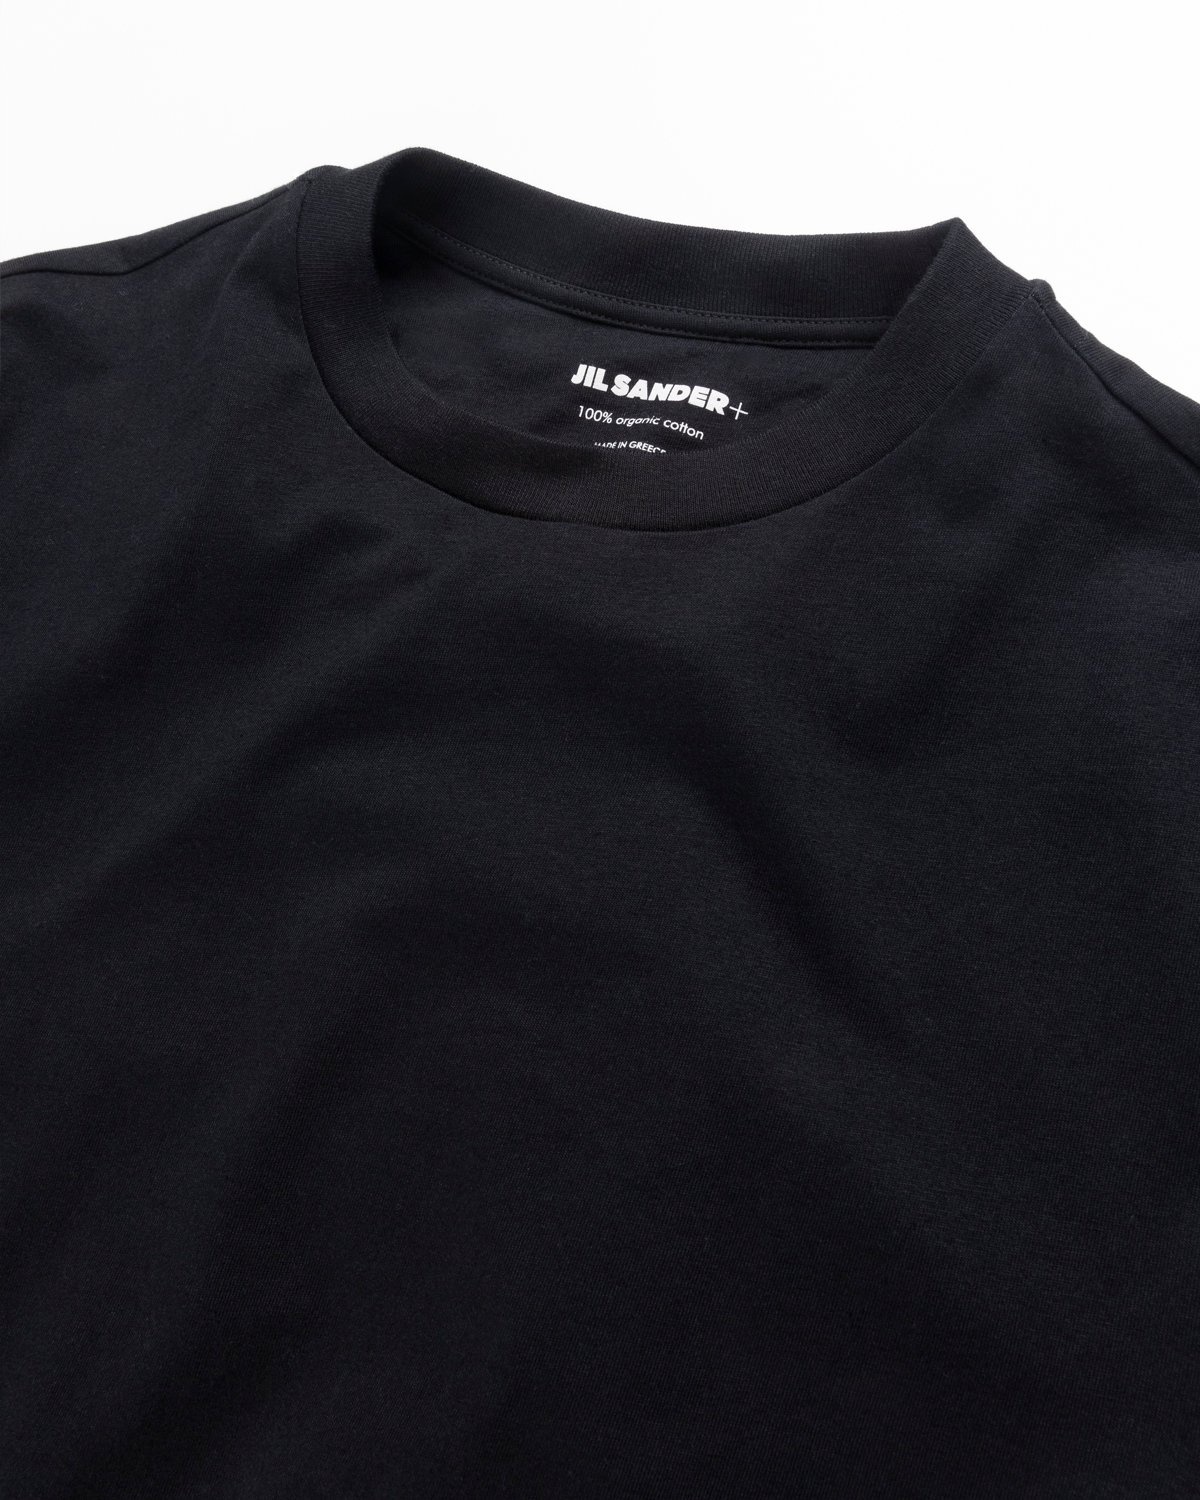 Jil Sander – T-Shirt 3-Pack Black - Tops - Black - Image 4